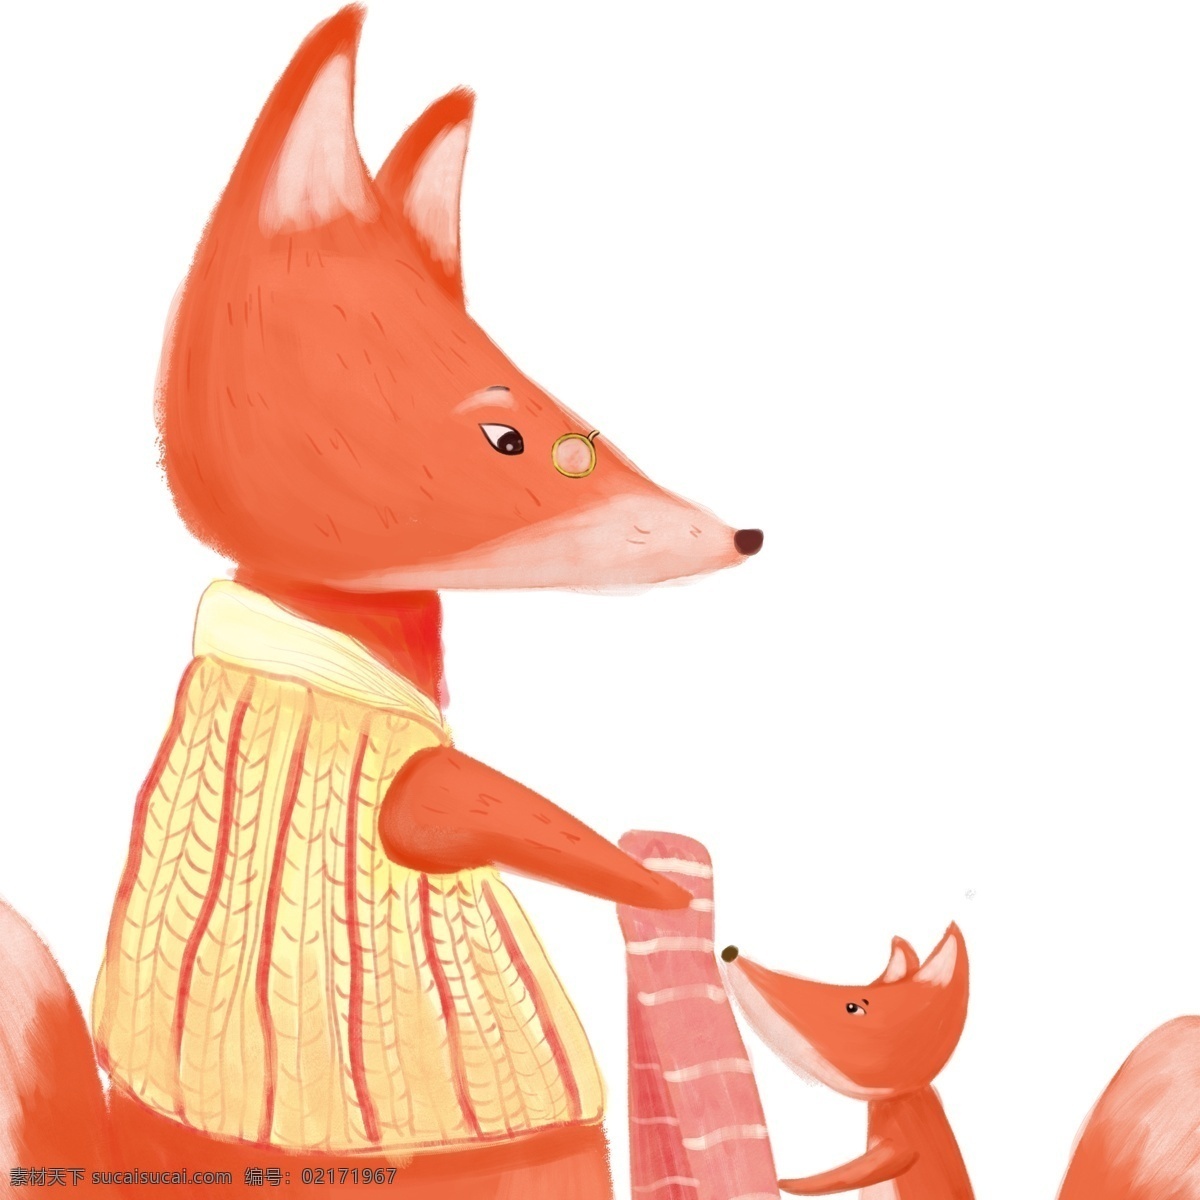 冬季 狐狸 妈妈 小孩 动物 卡通 小动物 插画 手绘 狐狸妈妈 萌宠